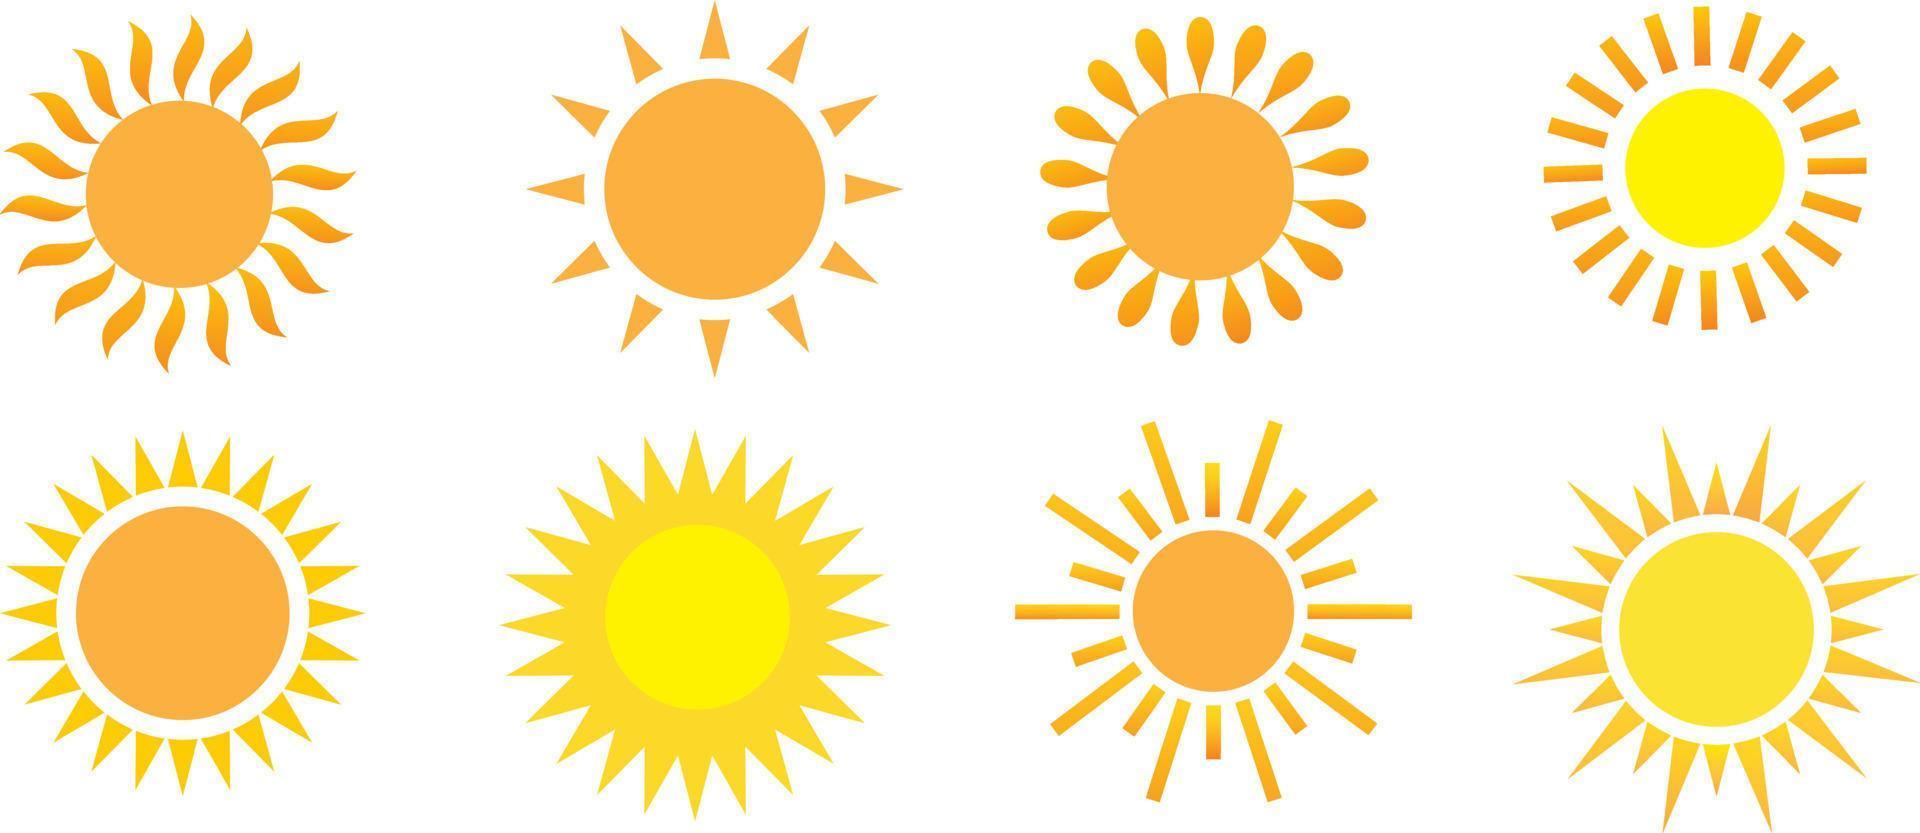 modèle de conception d'icône de ligne mince de signe solaire symbole d'étoile. illustration vectorielle de différents types de soleils vecteur